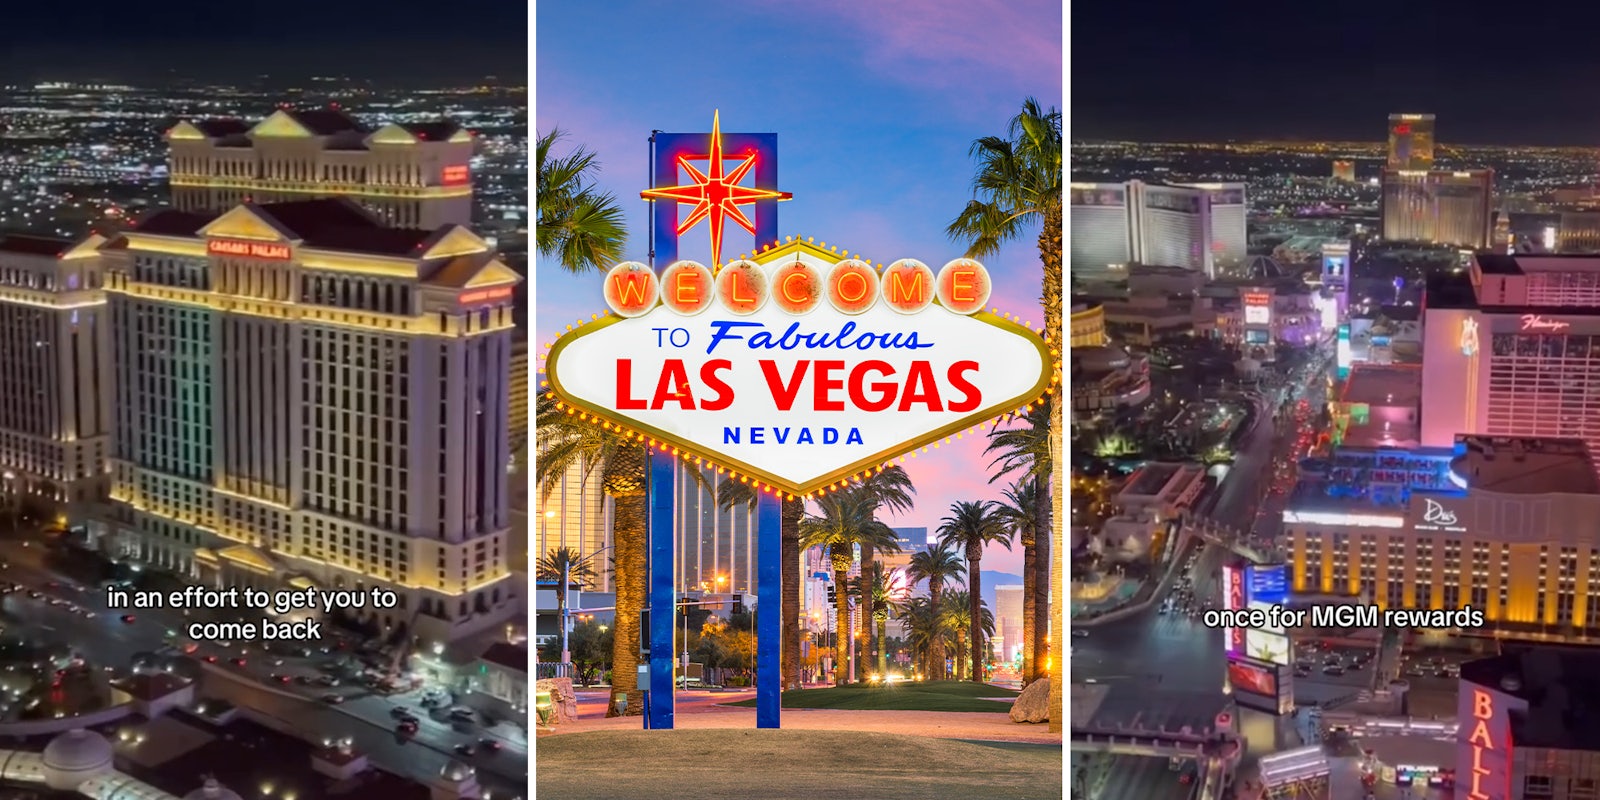 Vegas hack to get free hotel rooms